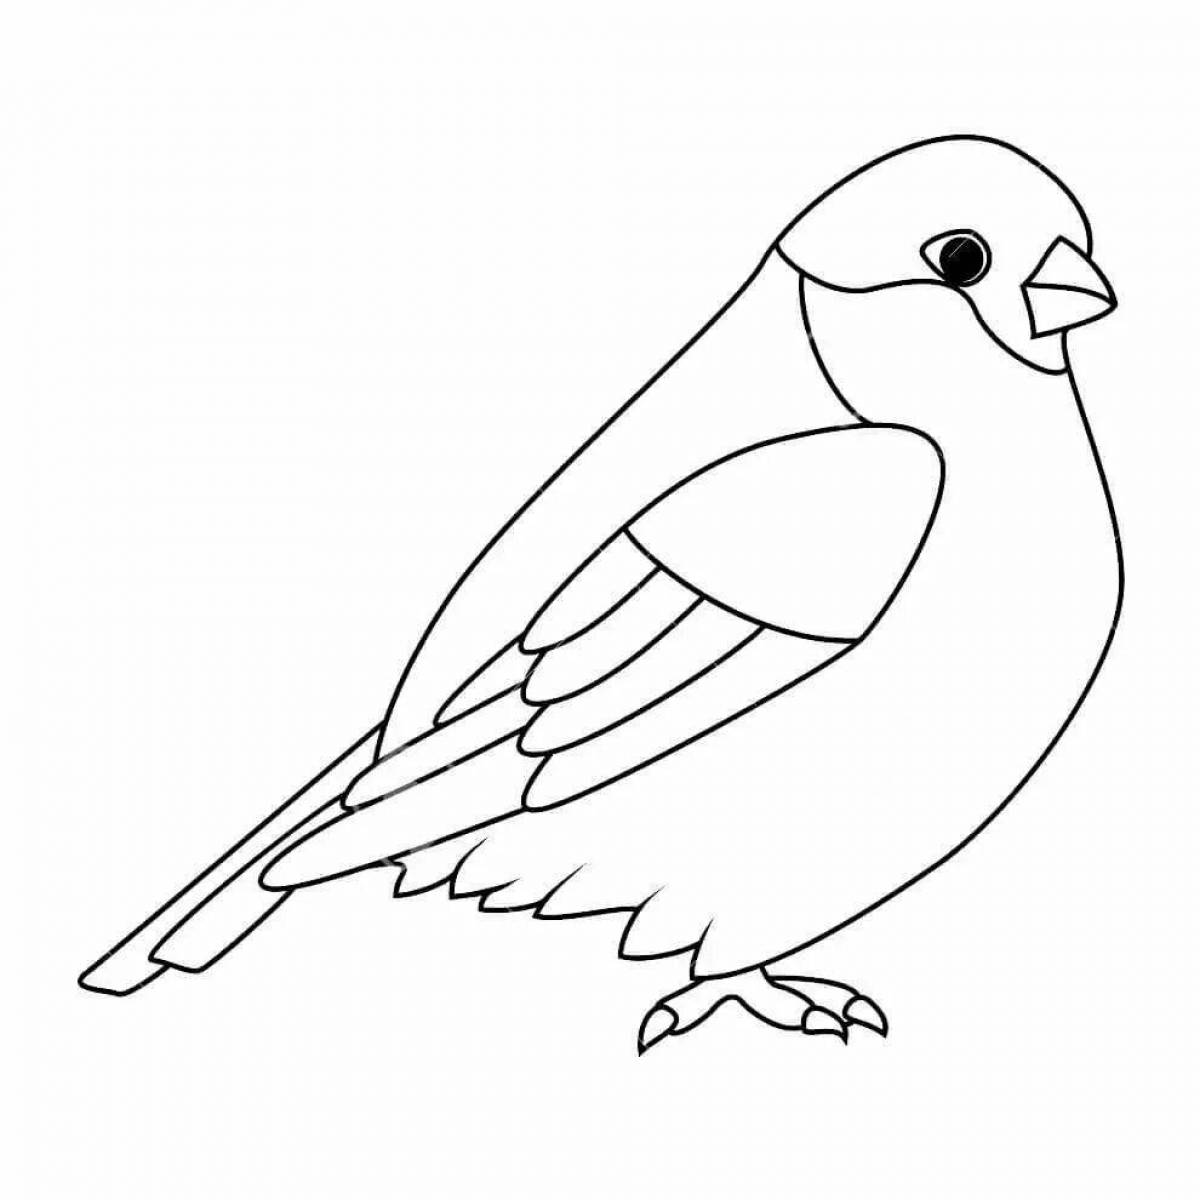 Раскраска грациозная птица снегирь для детей